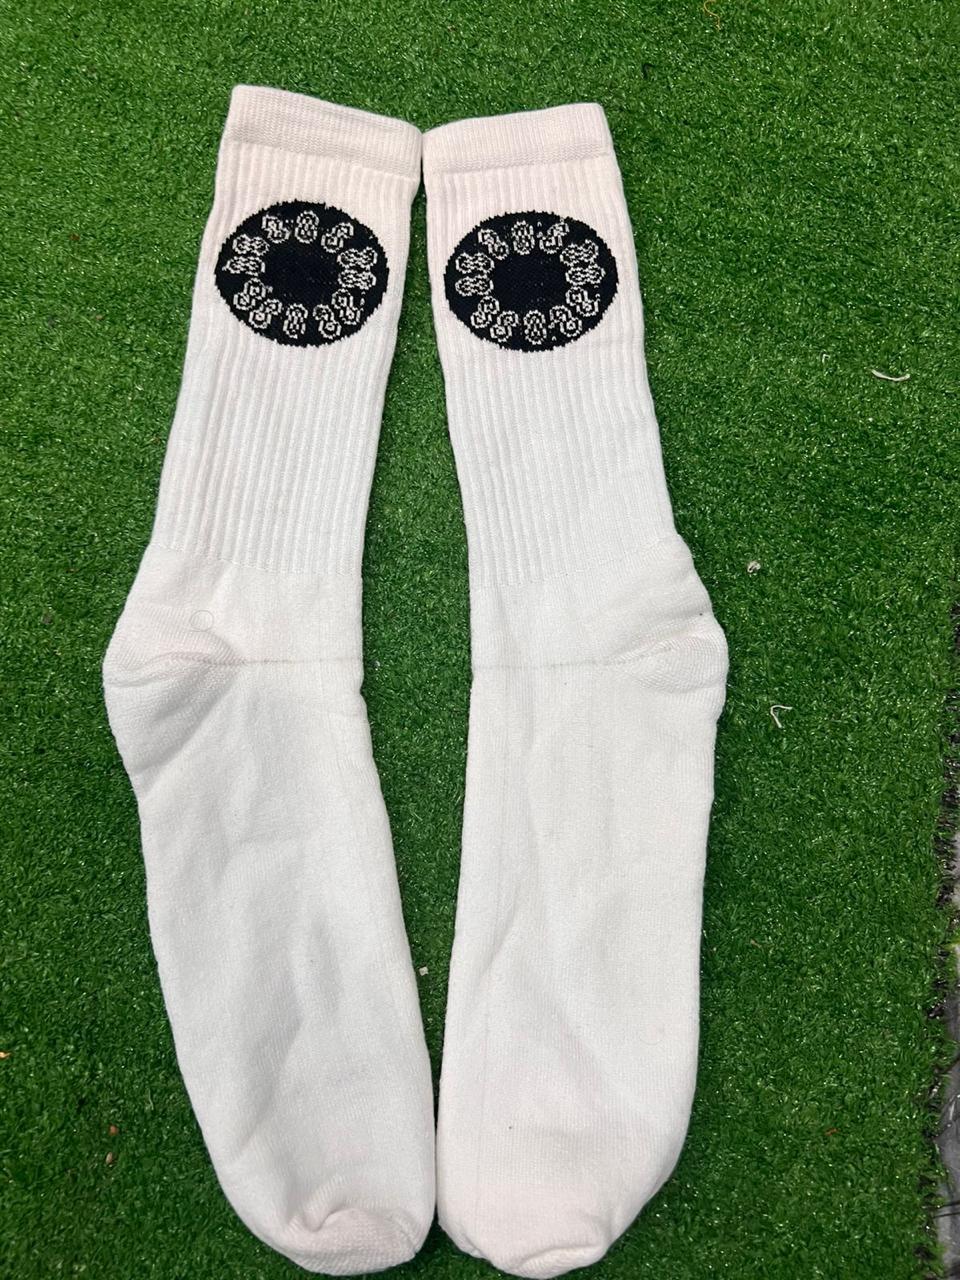 Infinite 8 Socks (2 pair)